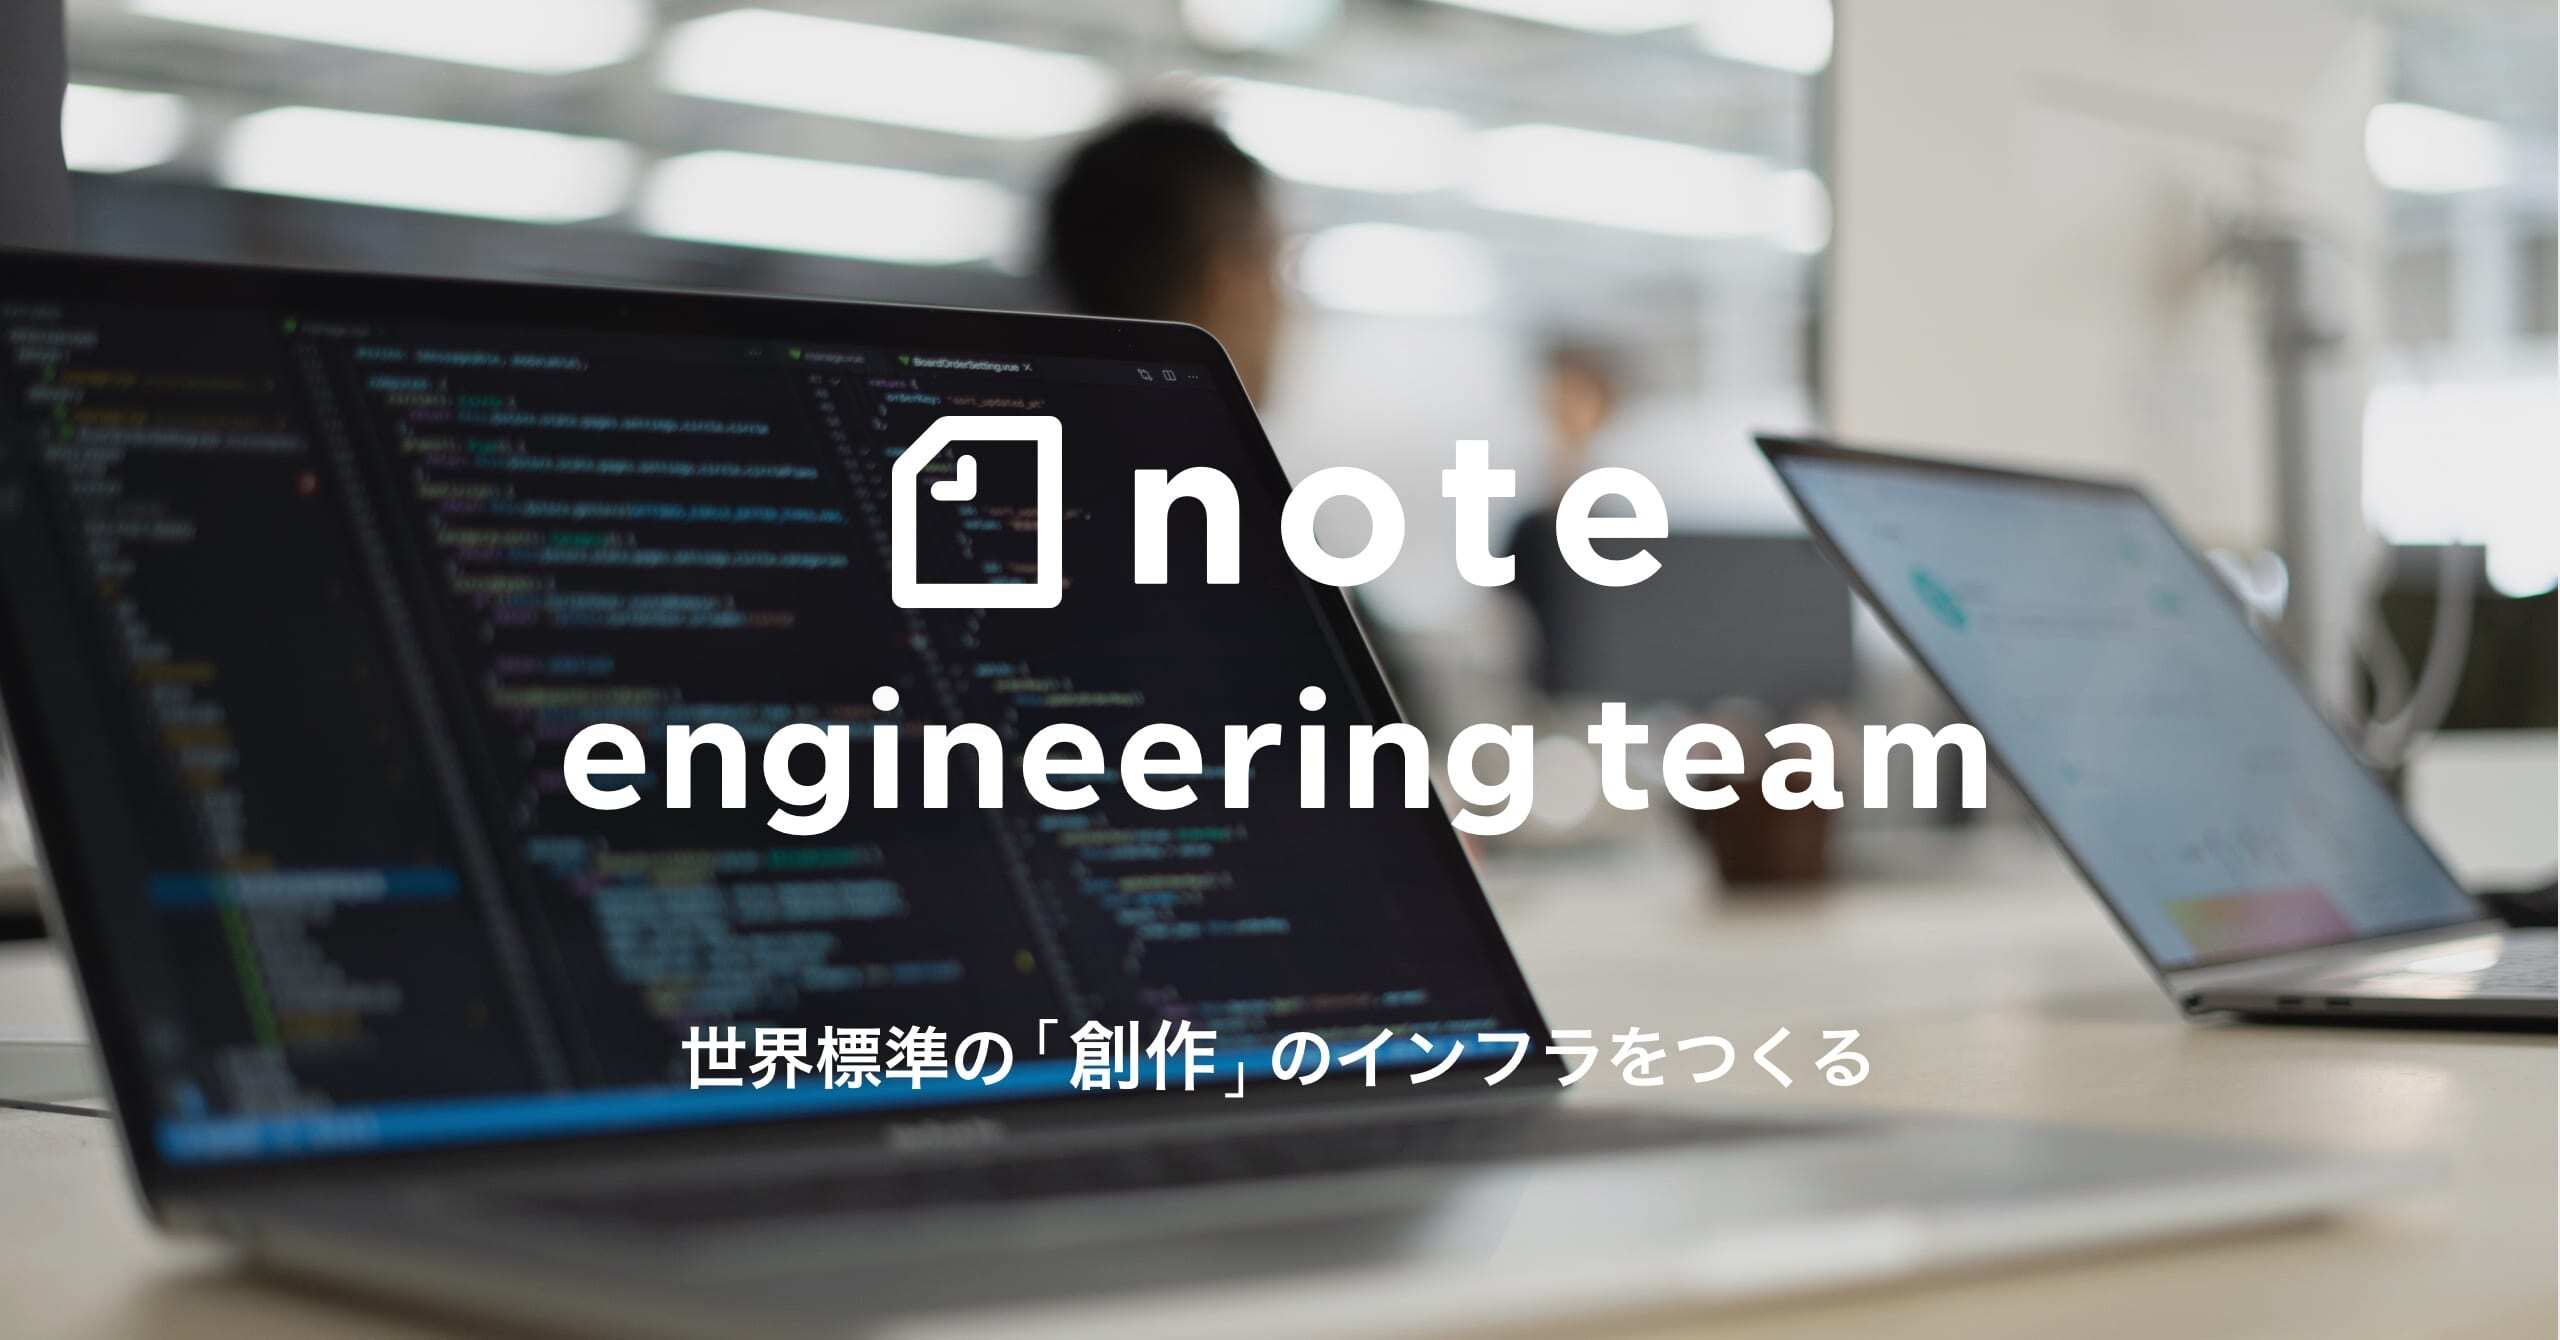 note社、エンジニア採用ページ「note engineering team」を開設。